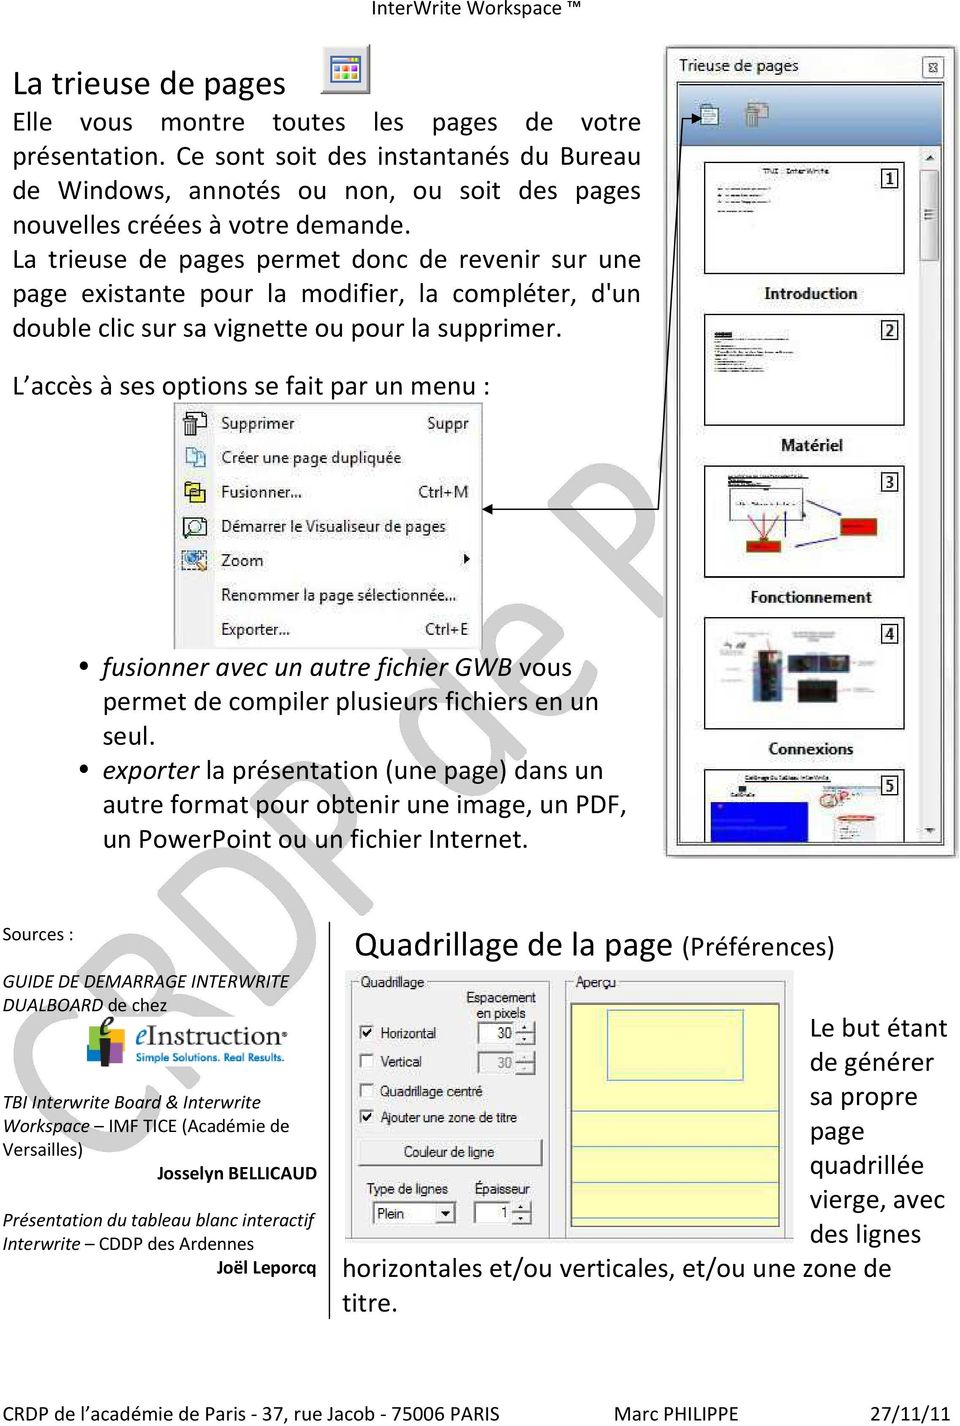 La trieuse de pages permet donc de revenir sur une page existante pour la modifier, la compléter, d'un double clic sur sa vignette ou pour la supprimer.